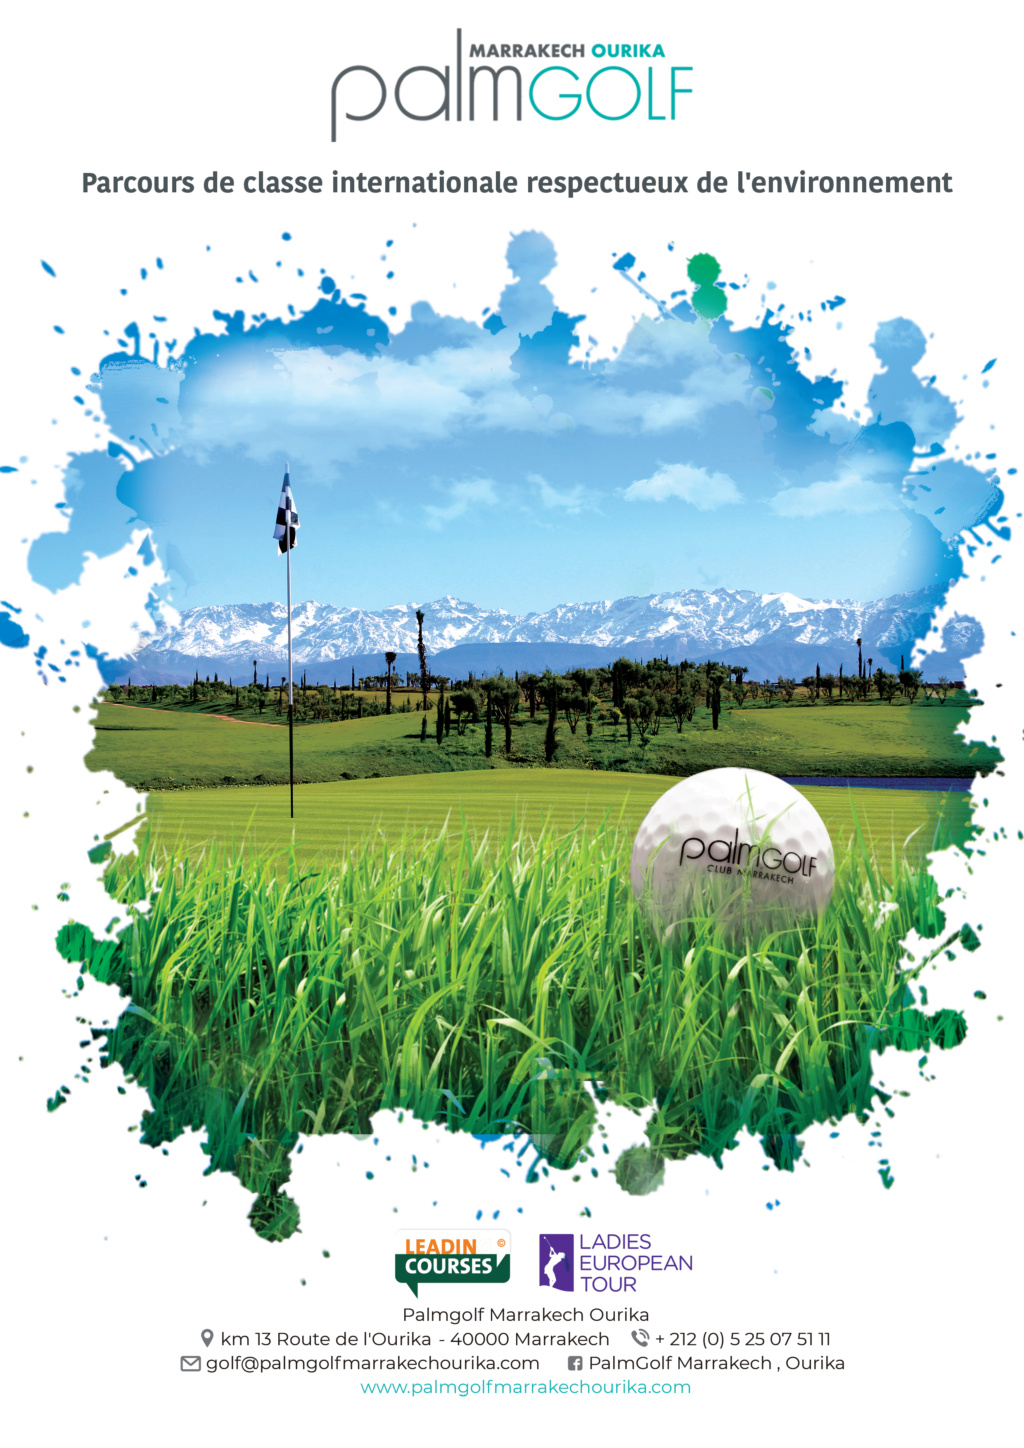 Palmerai Golf affiche Golfma10